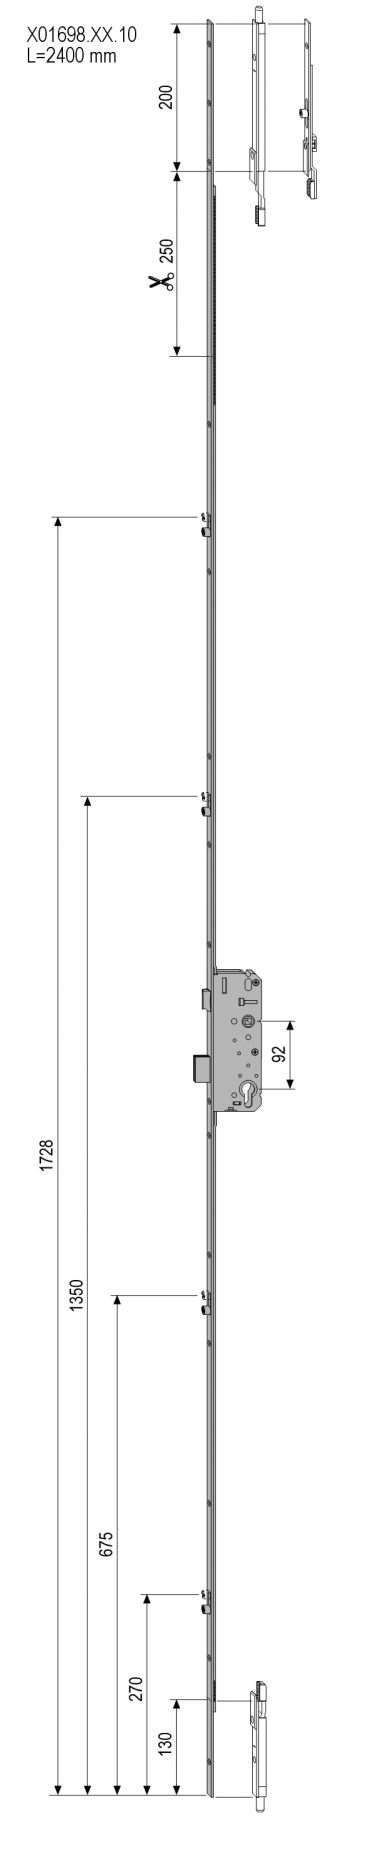 AGB -  Serratura Multipunto SICURTOP meccanica con scrocco catenaccio e nottolini - entrata 45 - h min - max 2400 - frontale 16 - interasse 92